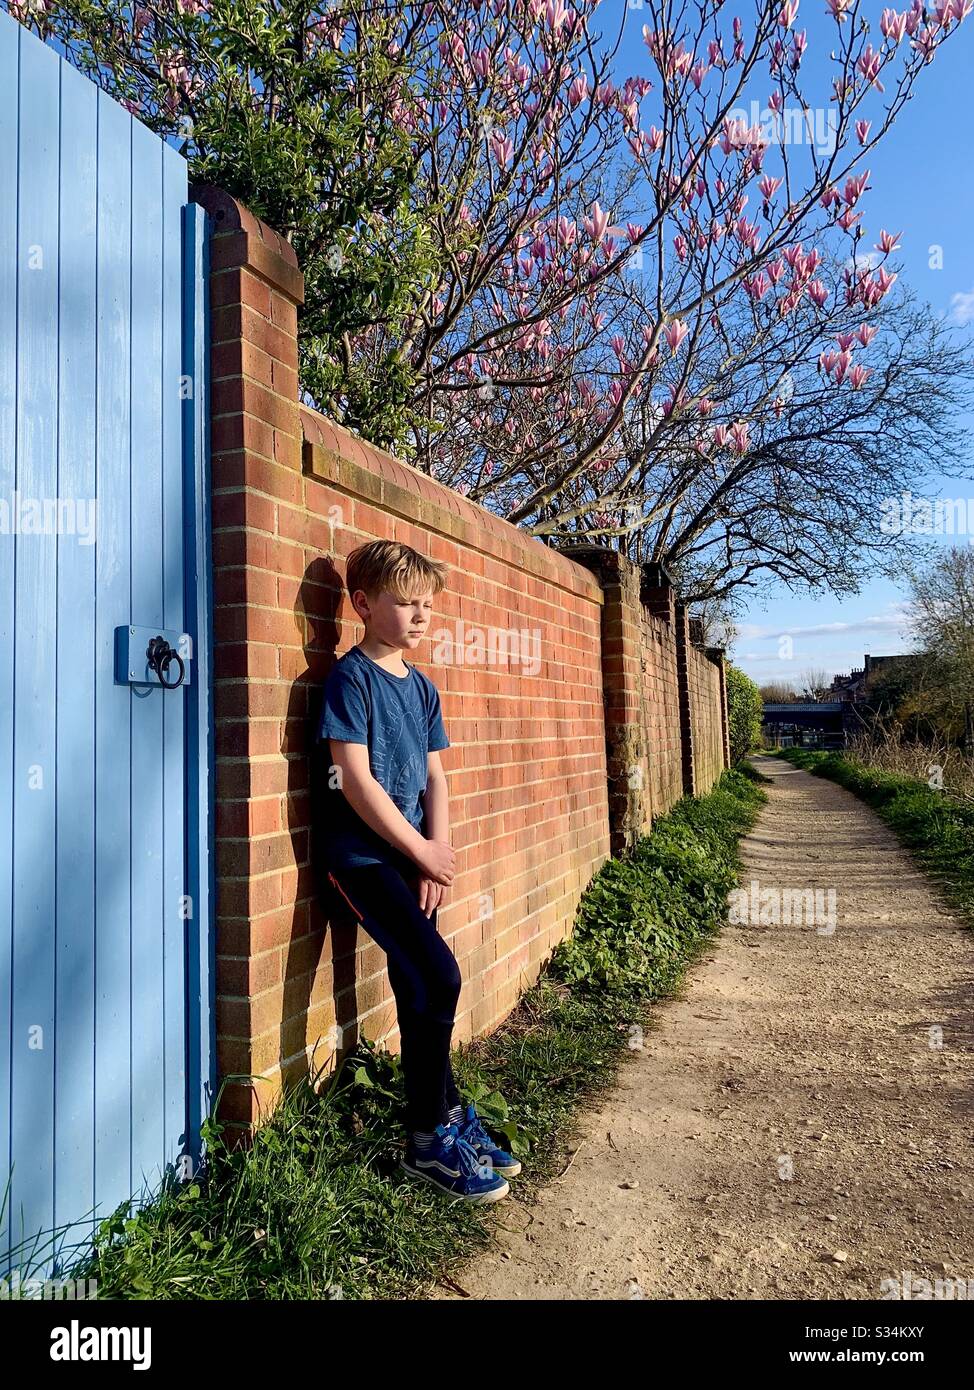 Während der Covid-19-Pandemie genießt ein kleiner Junge seine tägliche frische Luft. März 2020, Oxford, Großbritannien Stockfoto